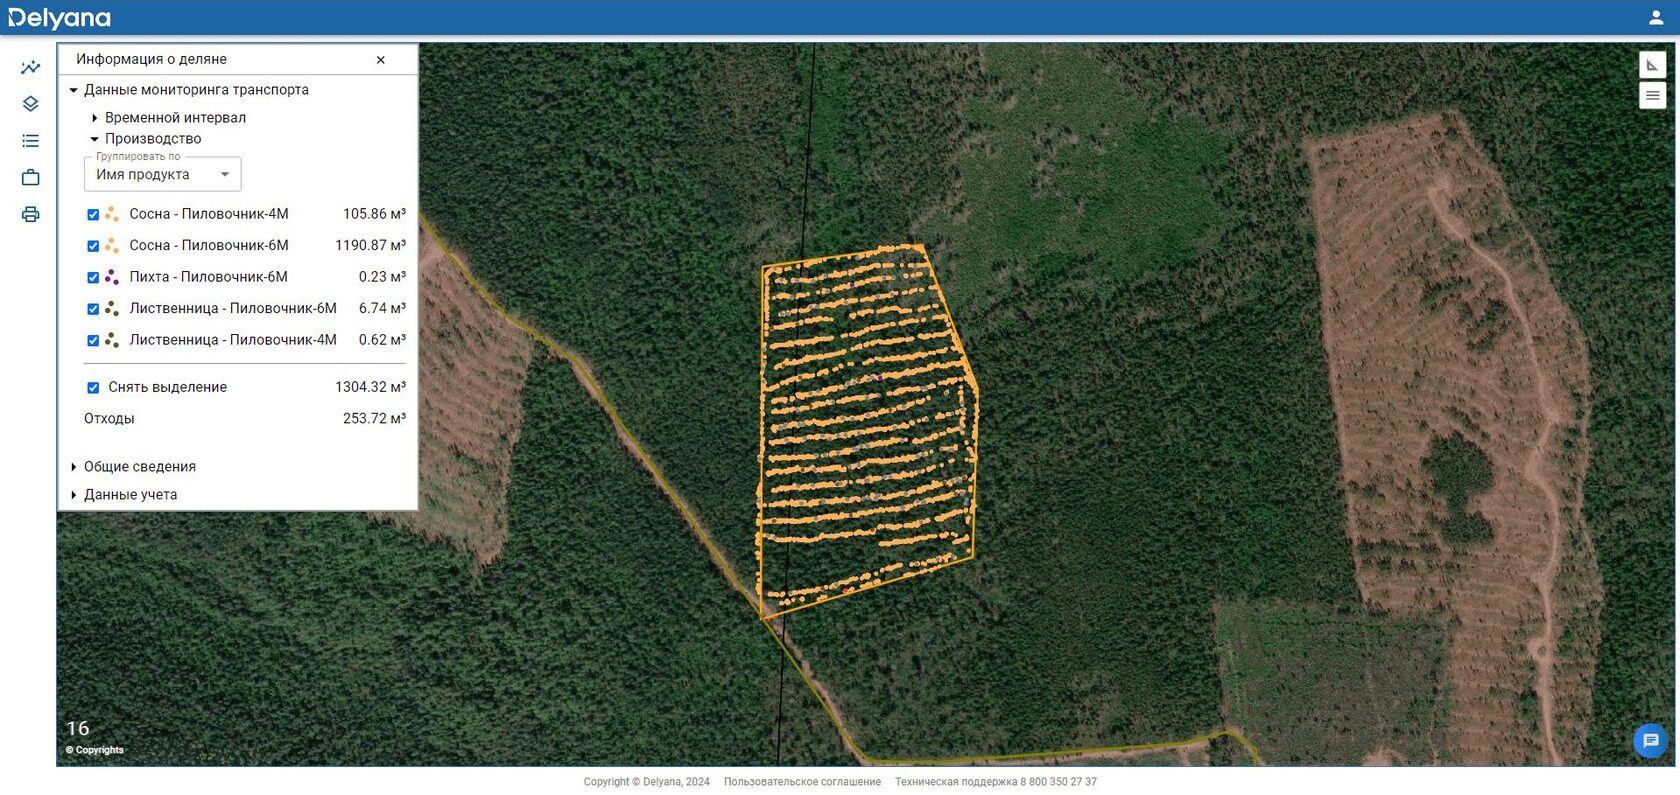 Скриншот интерфейса веб-приложения Delyana с подключенным модулем Delyana Мониторинг, который позволяет анализировать информацию об объёме, породном составе заготовленной древесины с координатами каждого спиленного дерева на интерактивной карте.